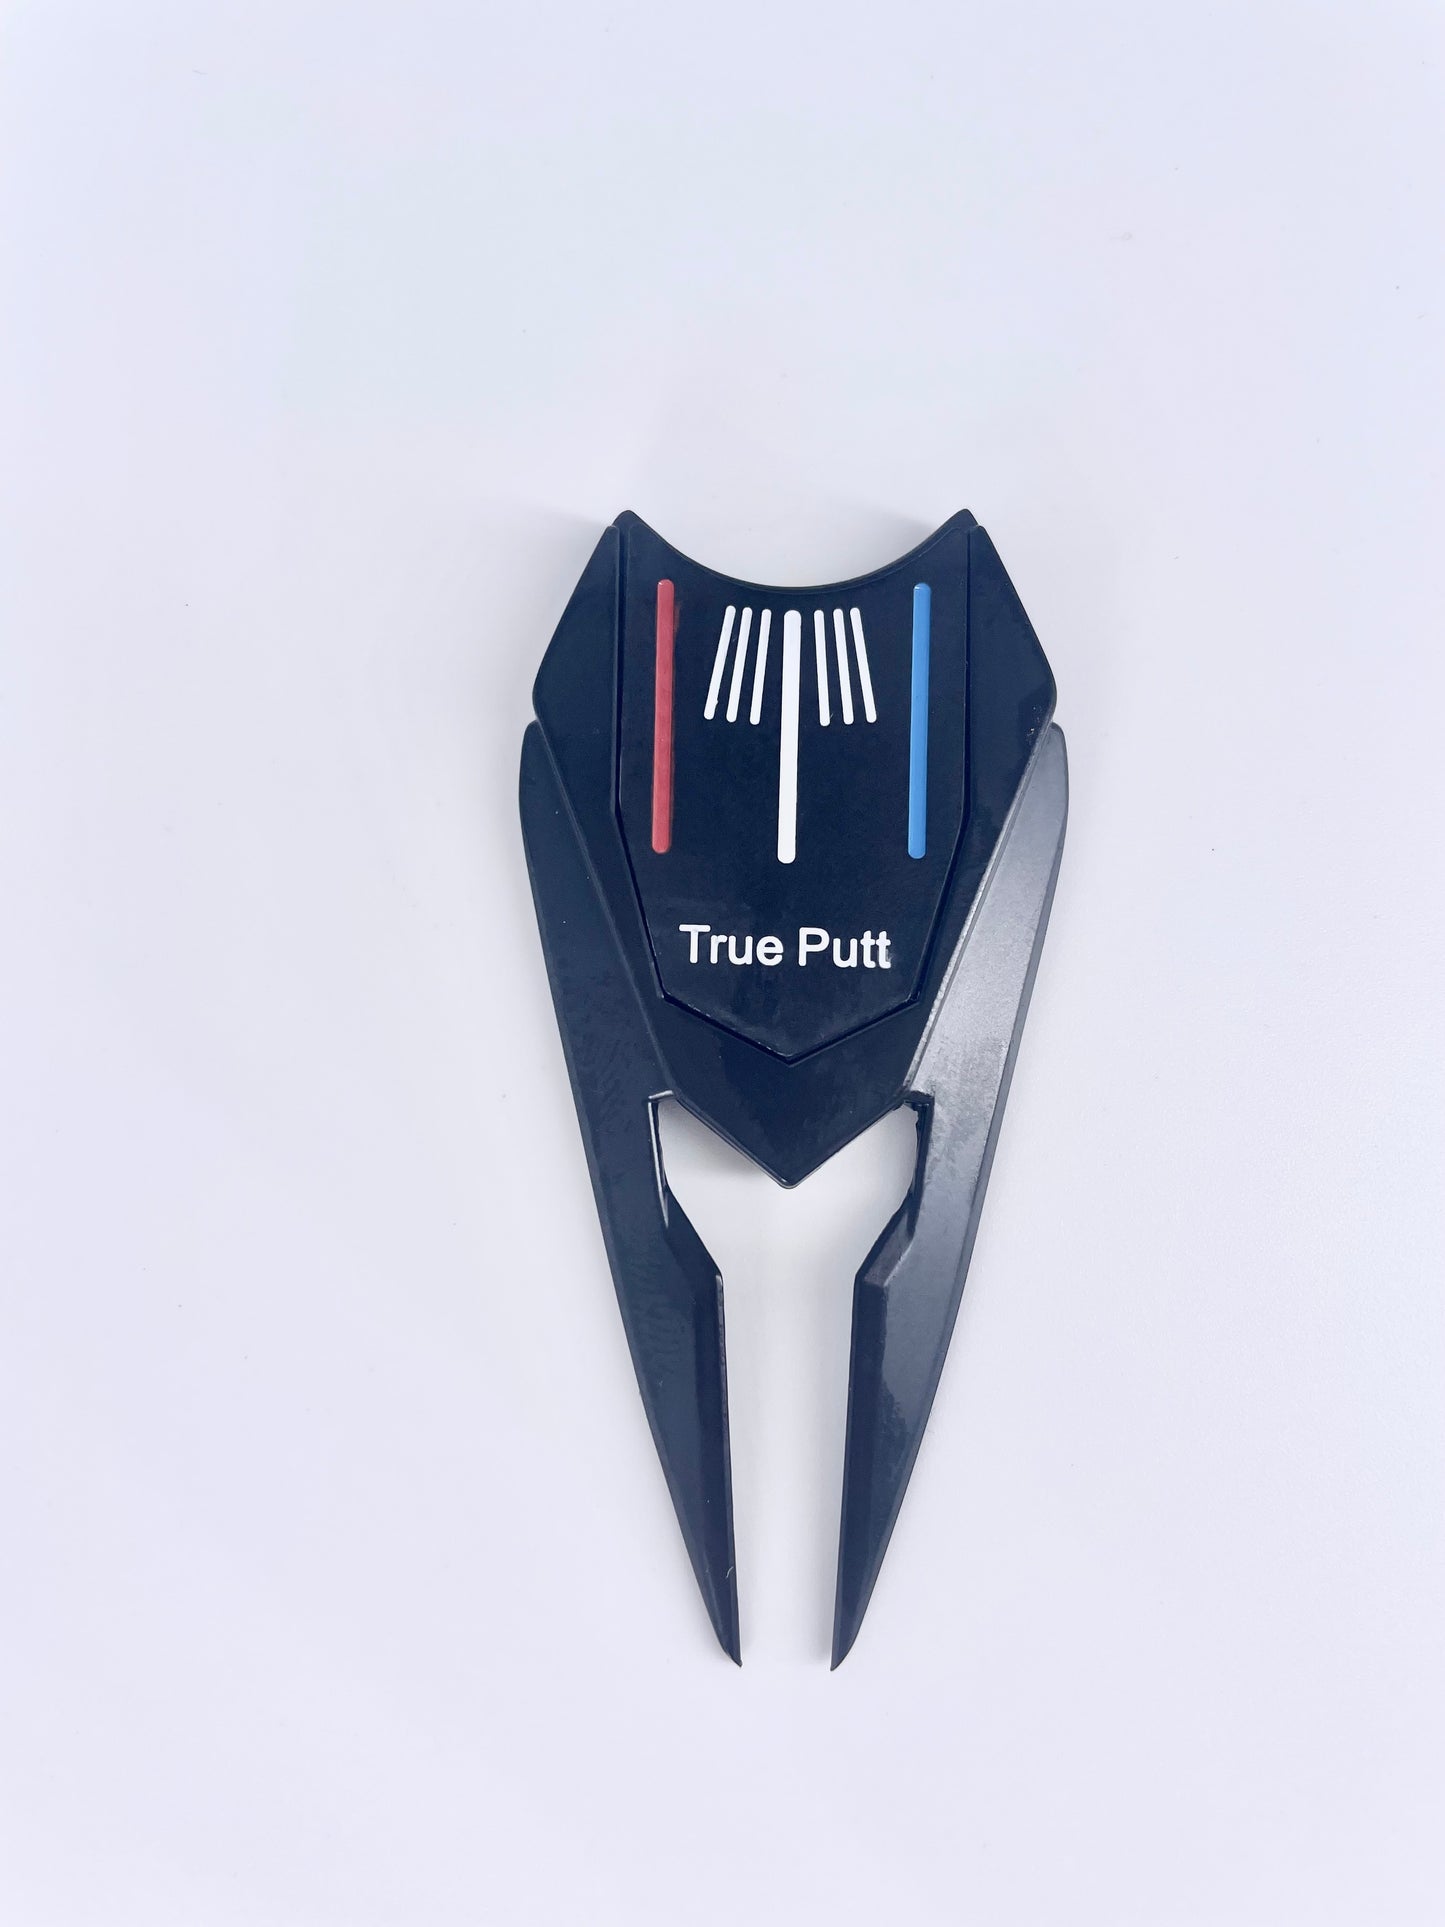 True Putt Ball Marker and Divot Tool